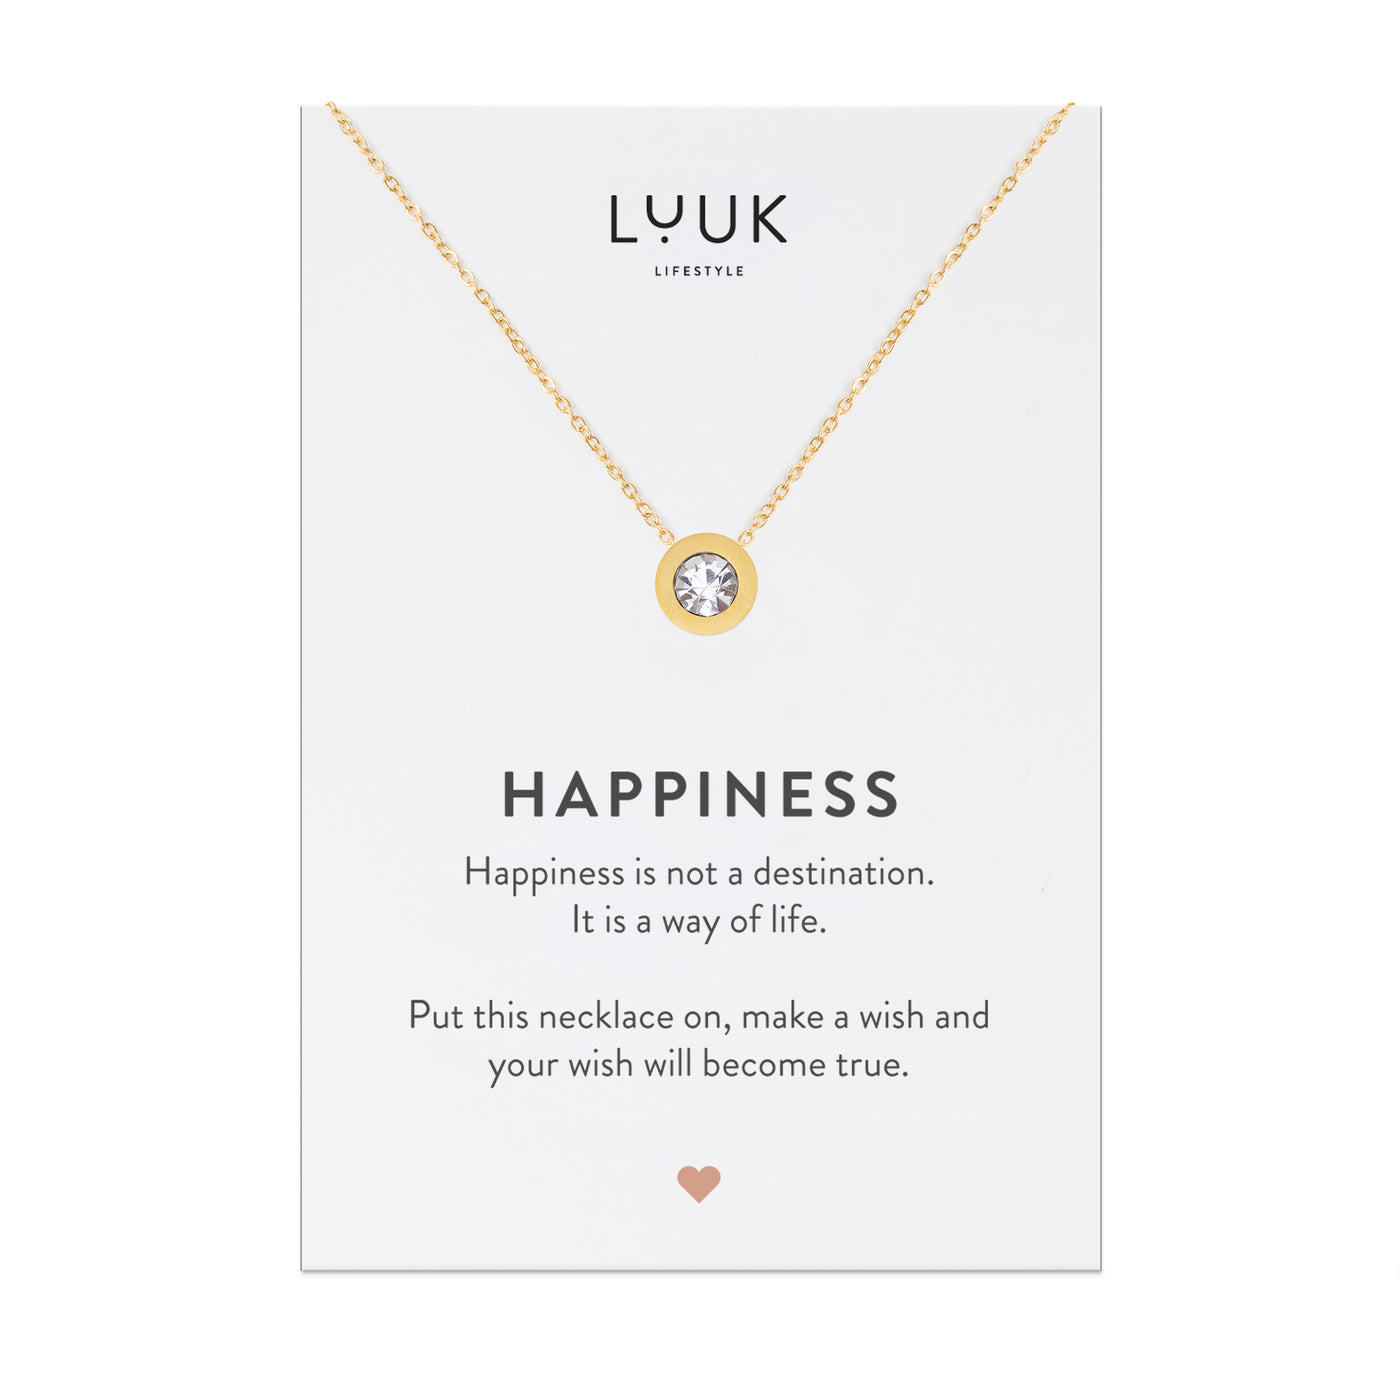 Goldene Halskette mit Strassstein Anhänger auf Happiness Spruchkarte von der Brand Luuk Lifestyle 